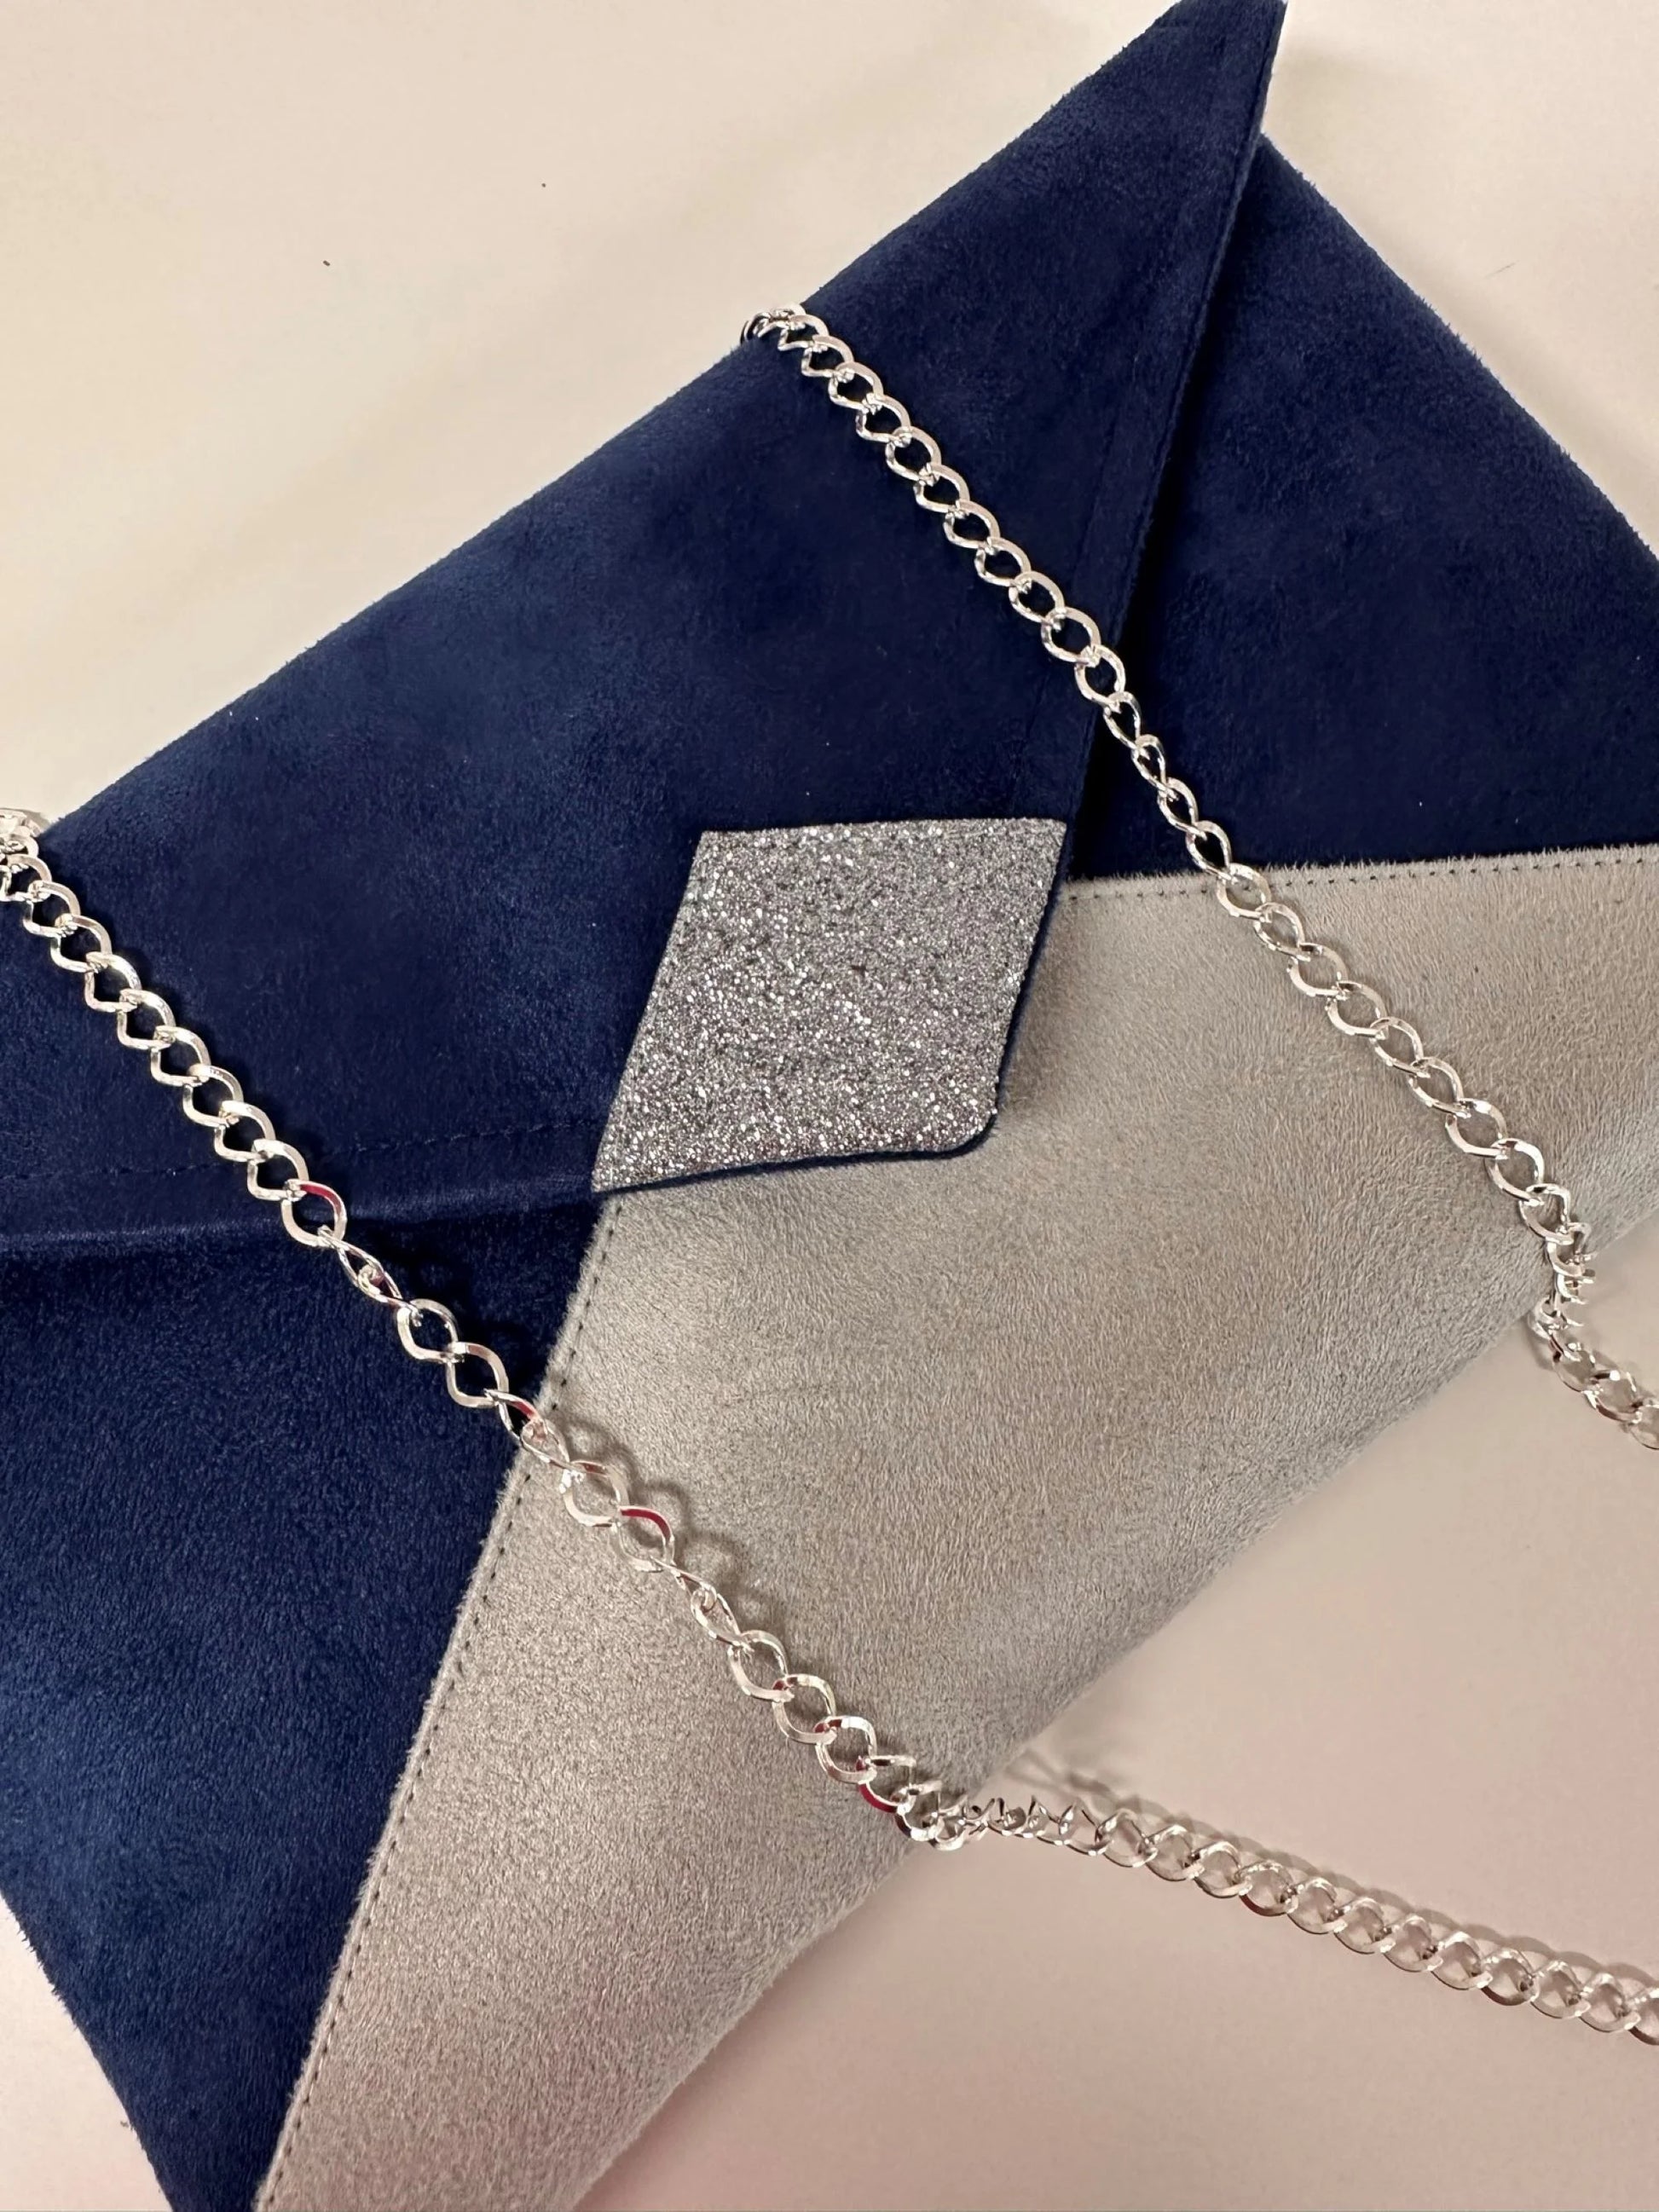 Vue détaillée du sac pochette Isa bleu marine et gris à paillettes argentées, avec sa chainette amovible.